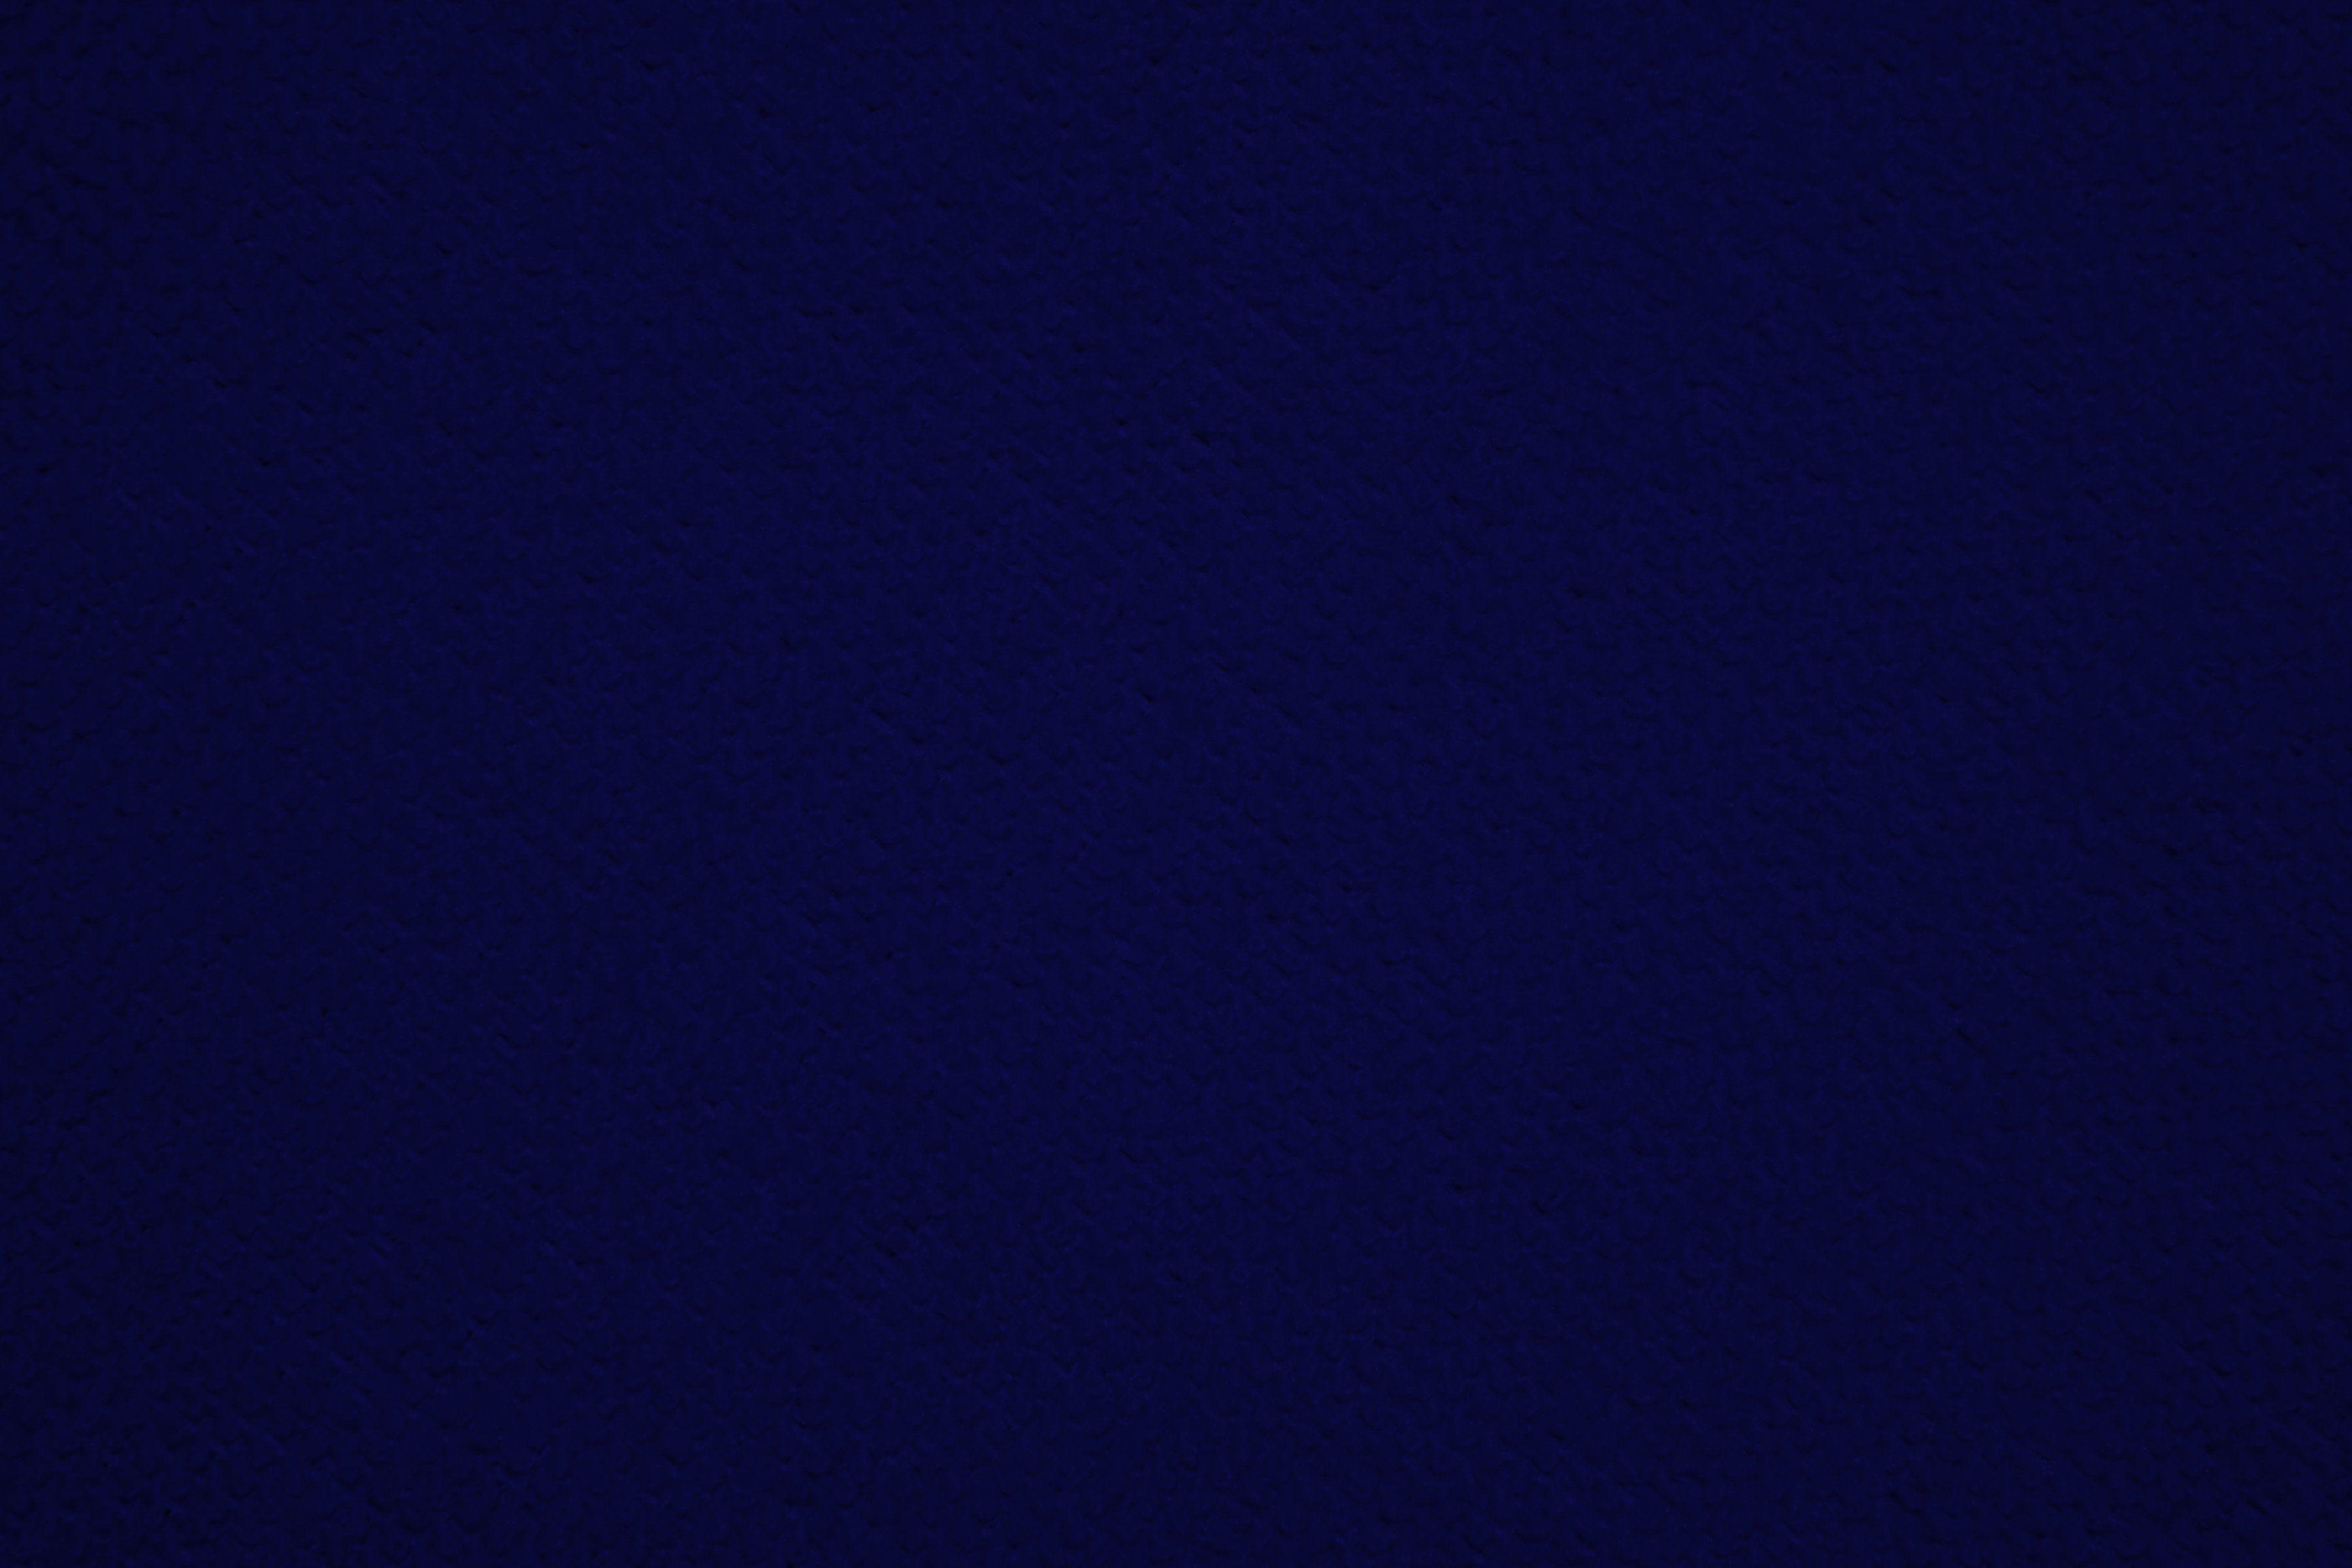 Dark Blue Backgrounds Image